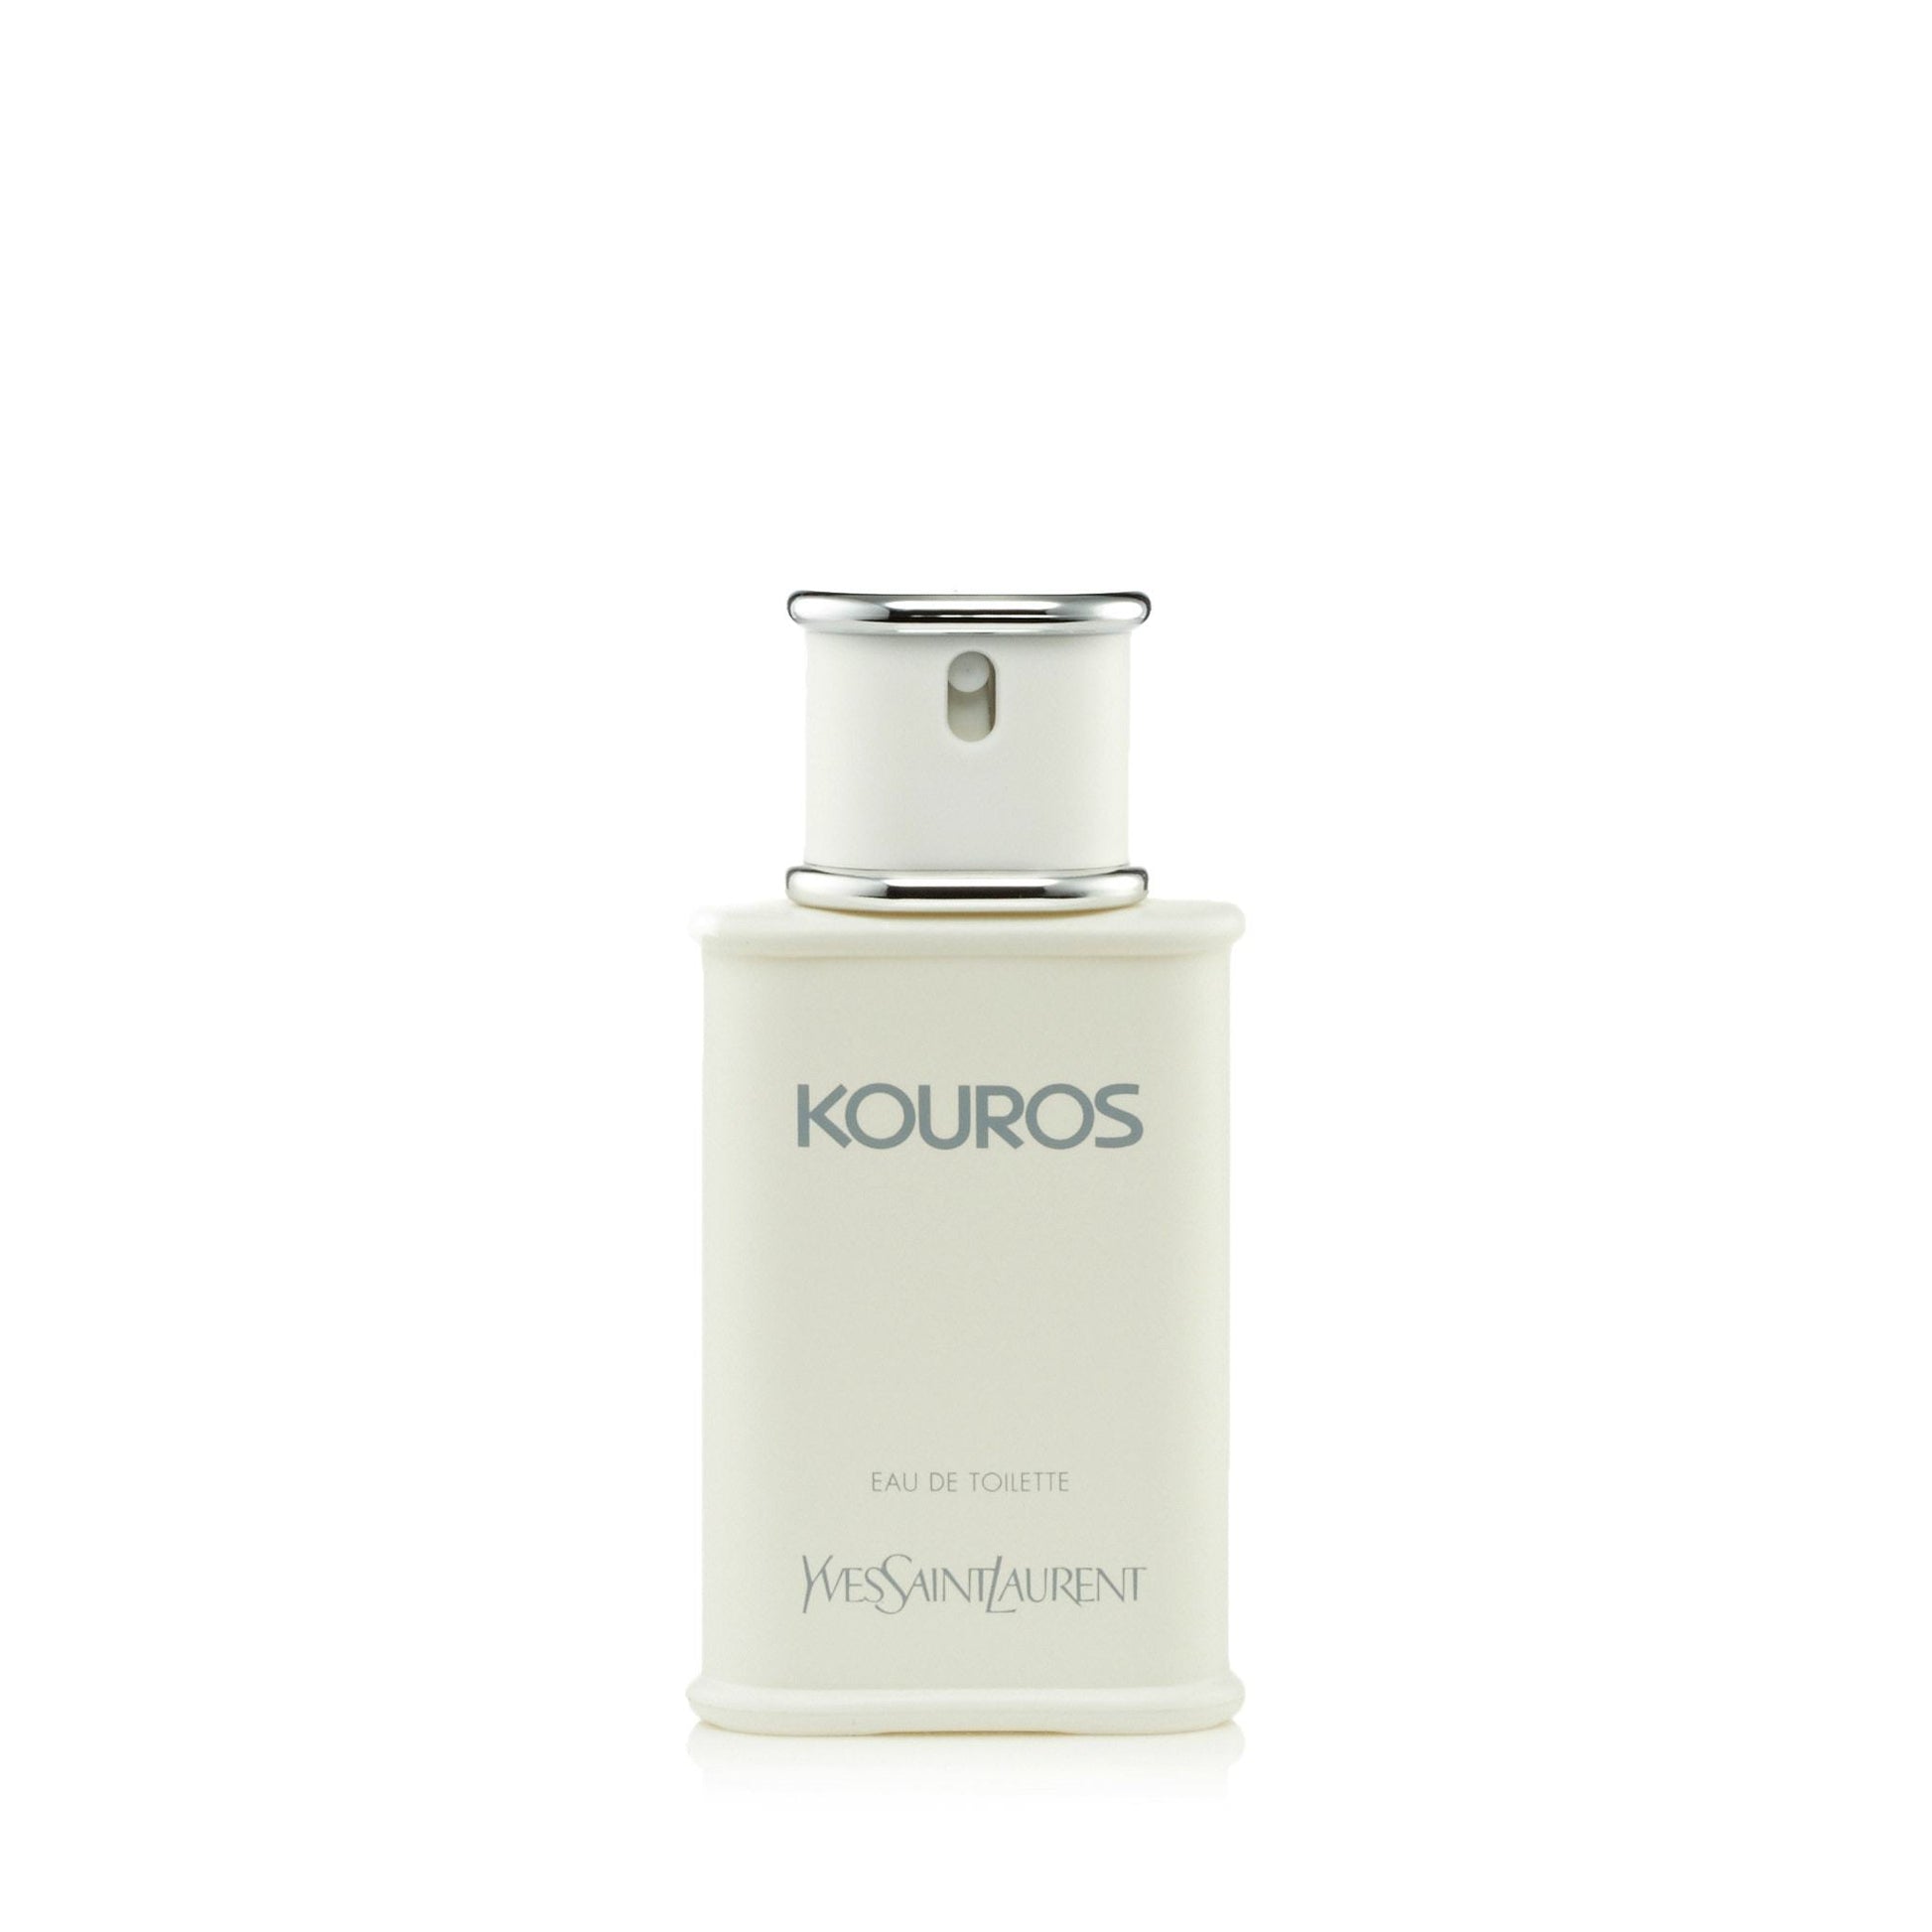 Kouros Eau de Toilette Spray for Men by Yves Saint Laurent, Product image 2